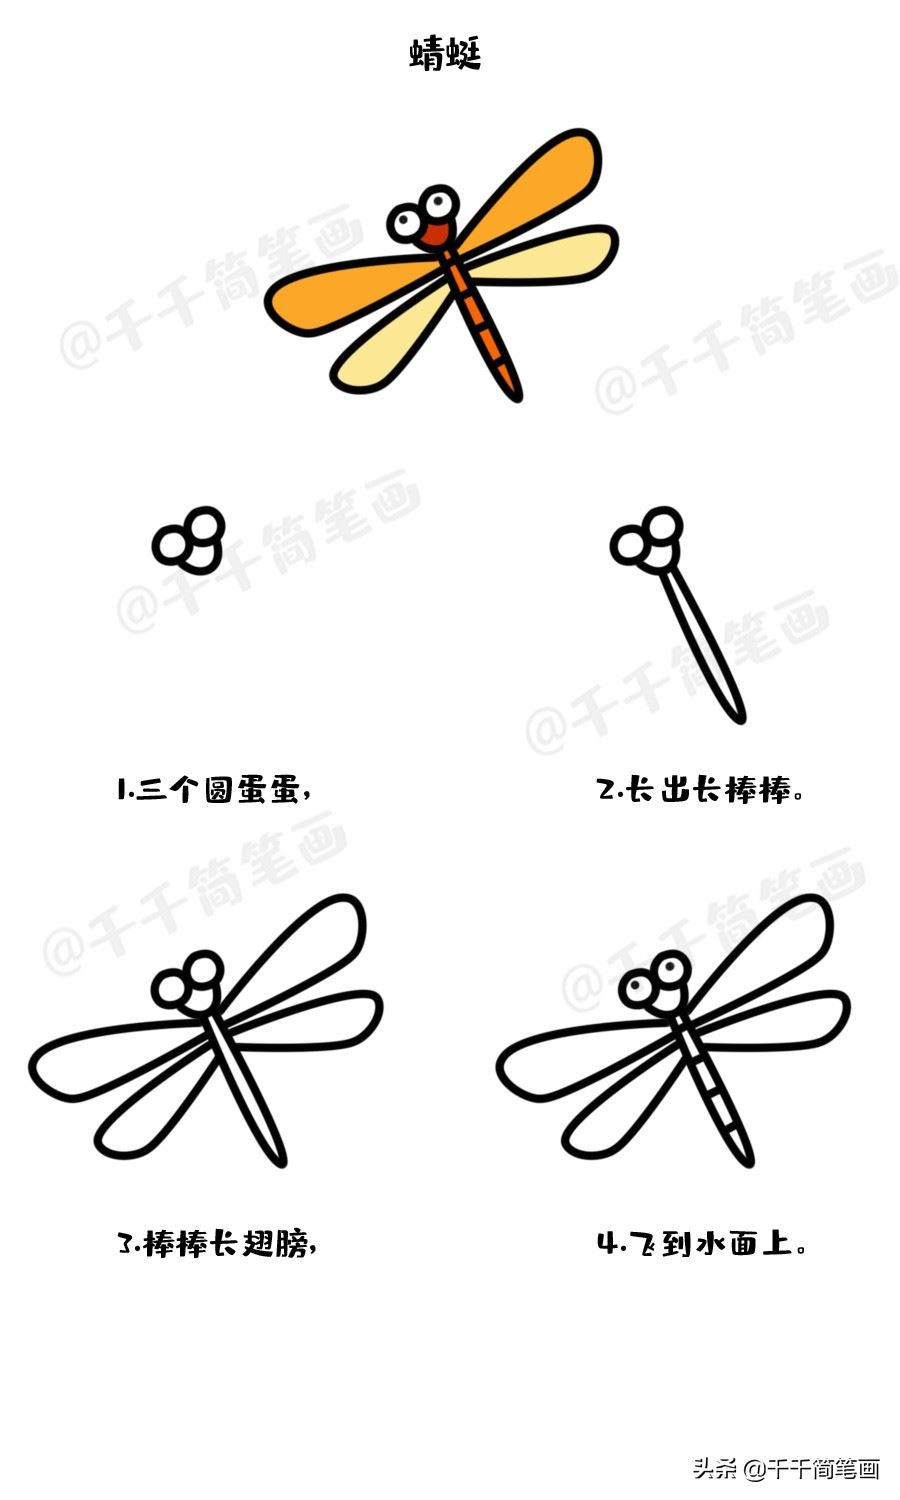 可爱的小蜻蜓简笔画